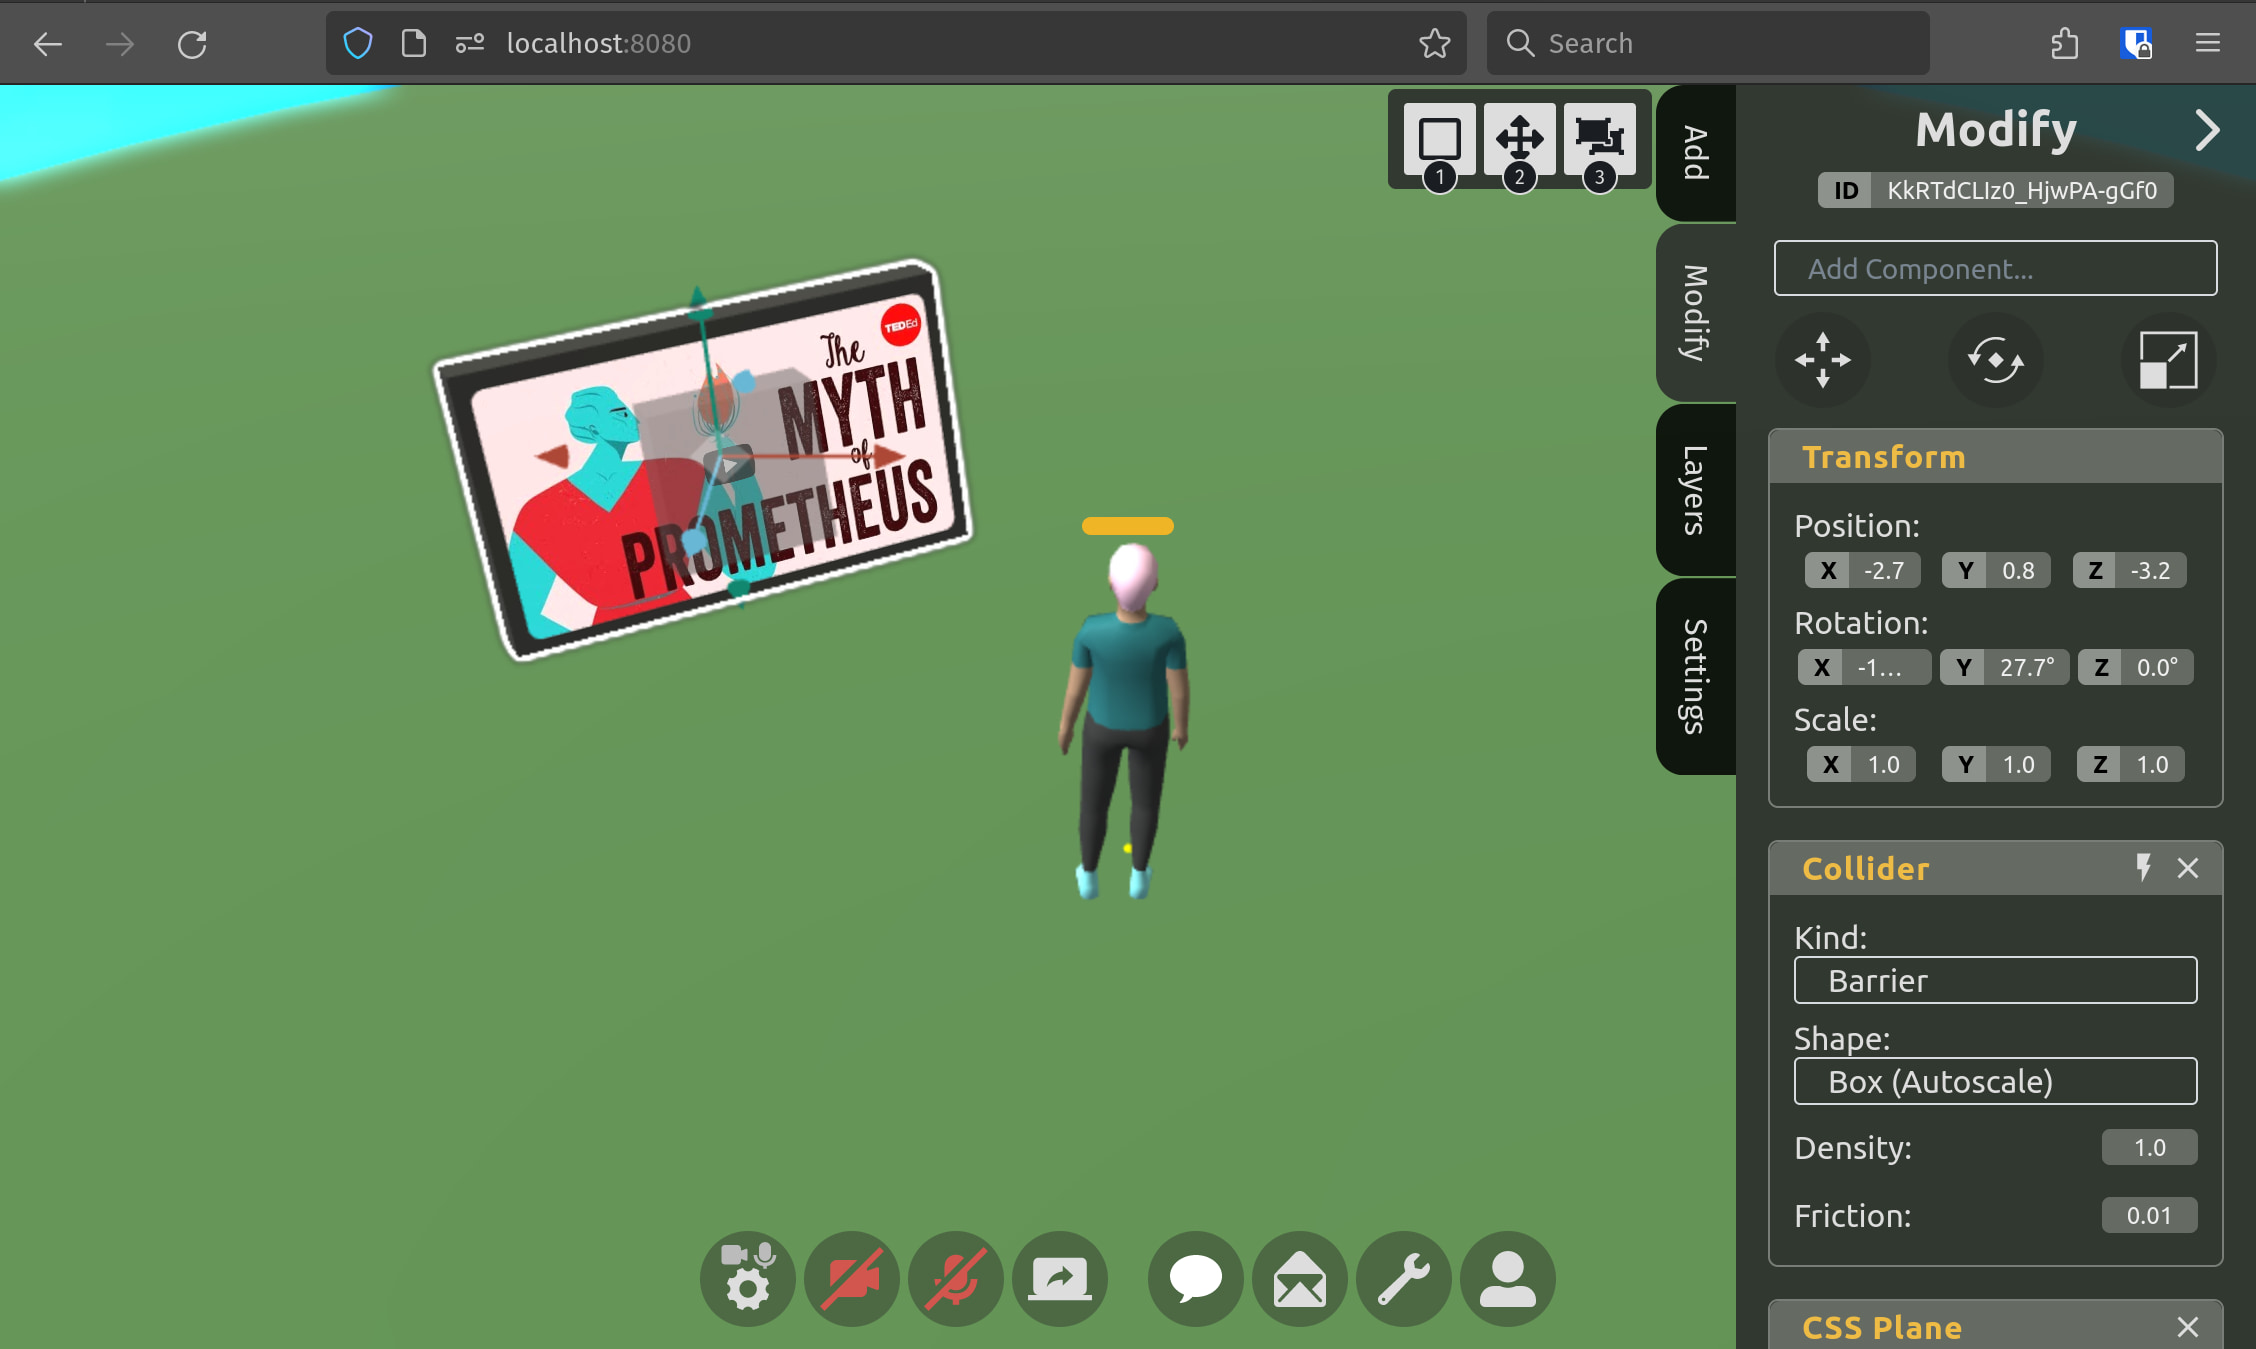 Screenshot 5 - Builder Mode